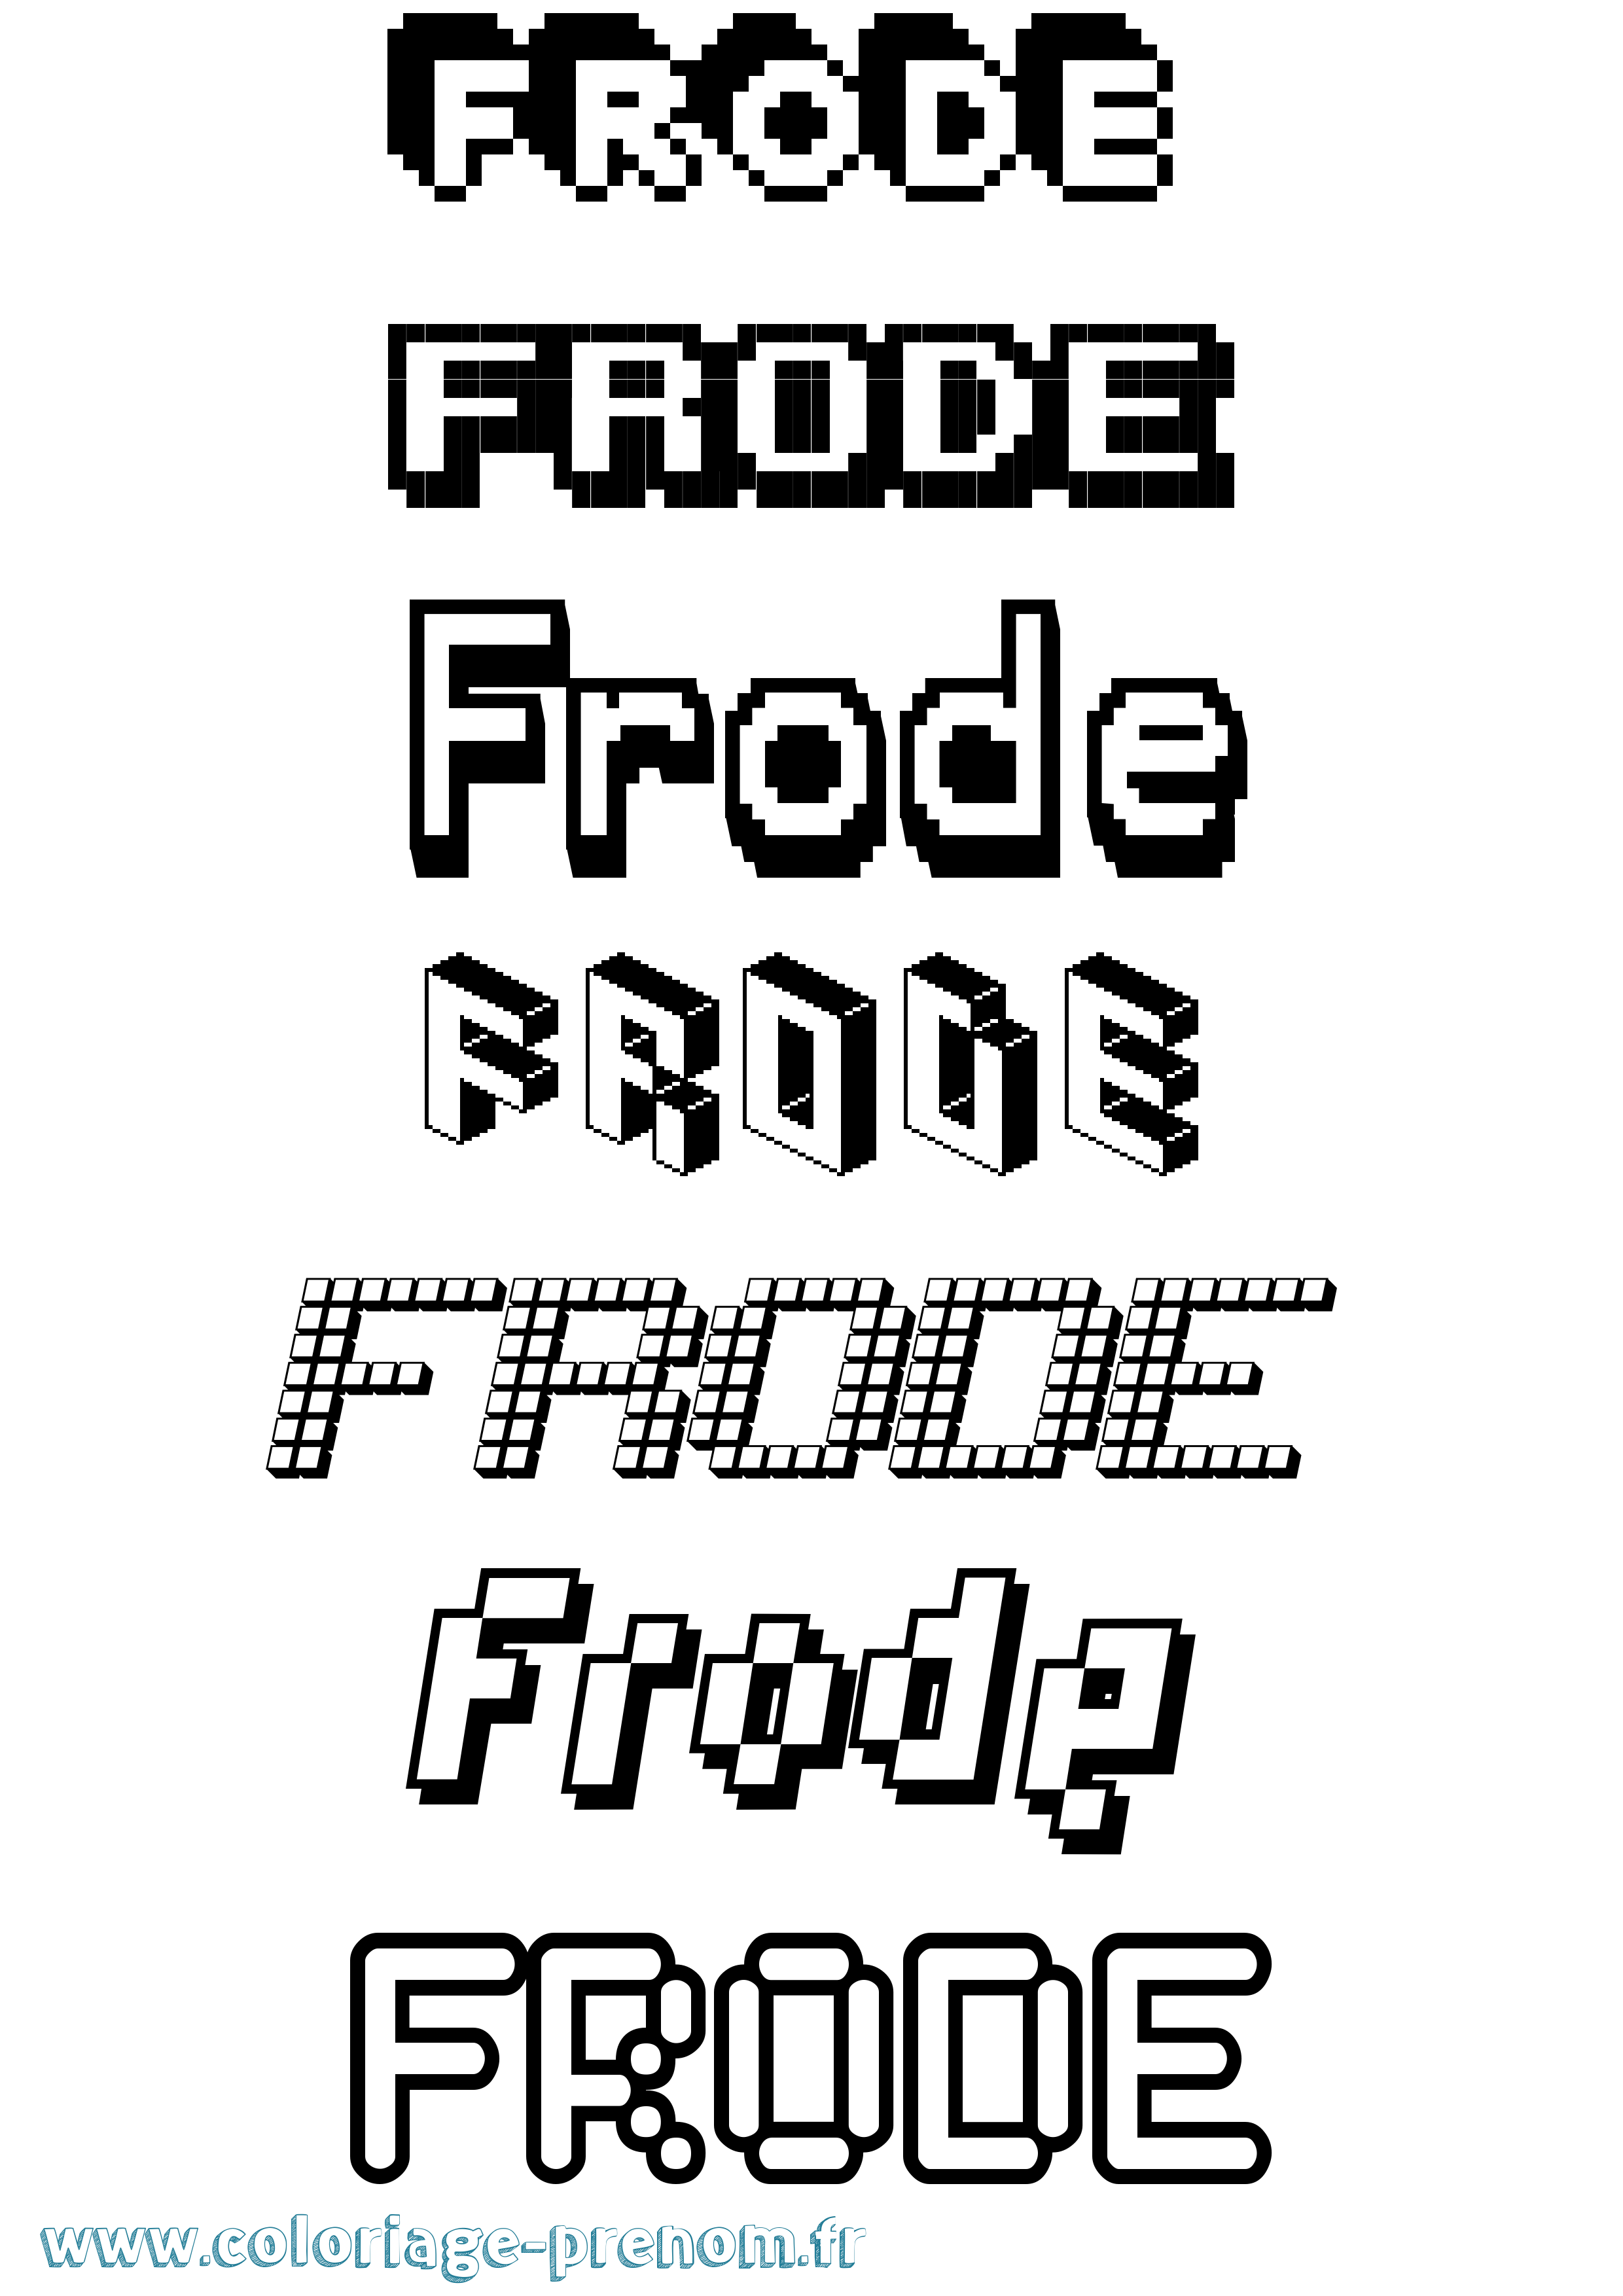 Coloriage prénom Frode Pixel